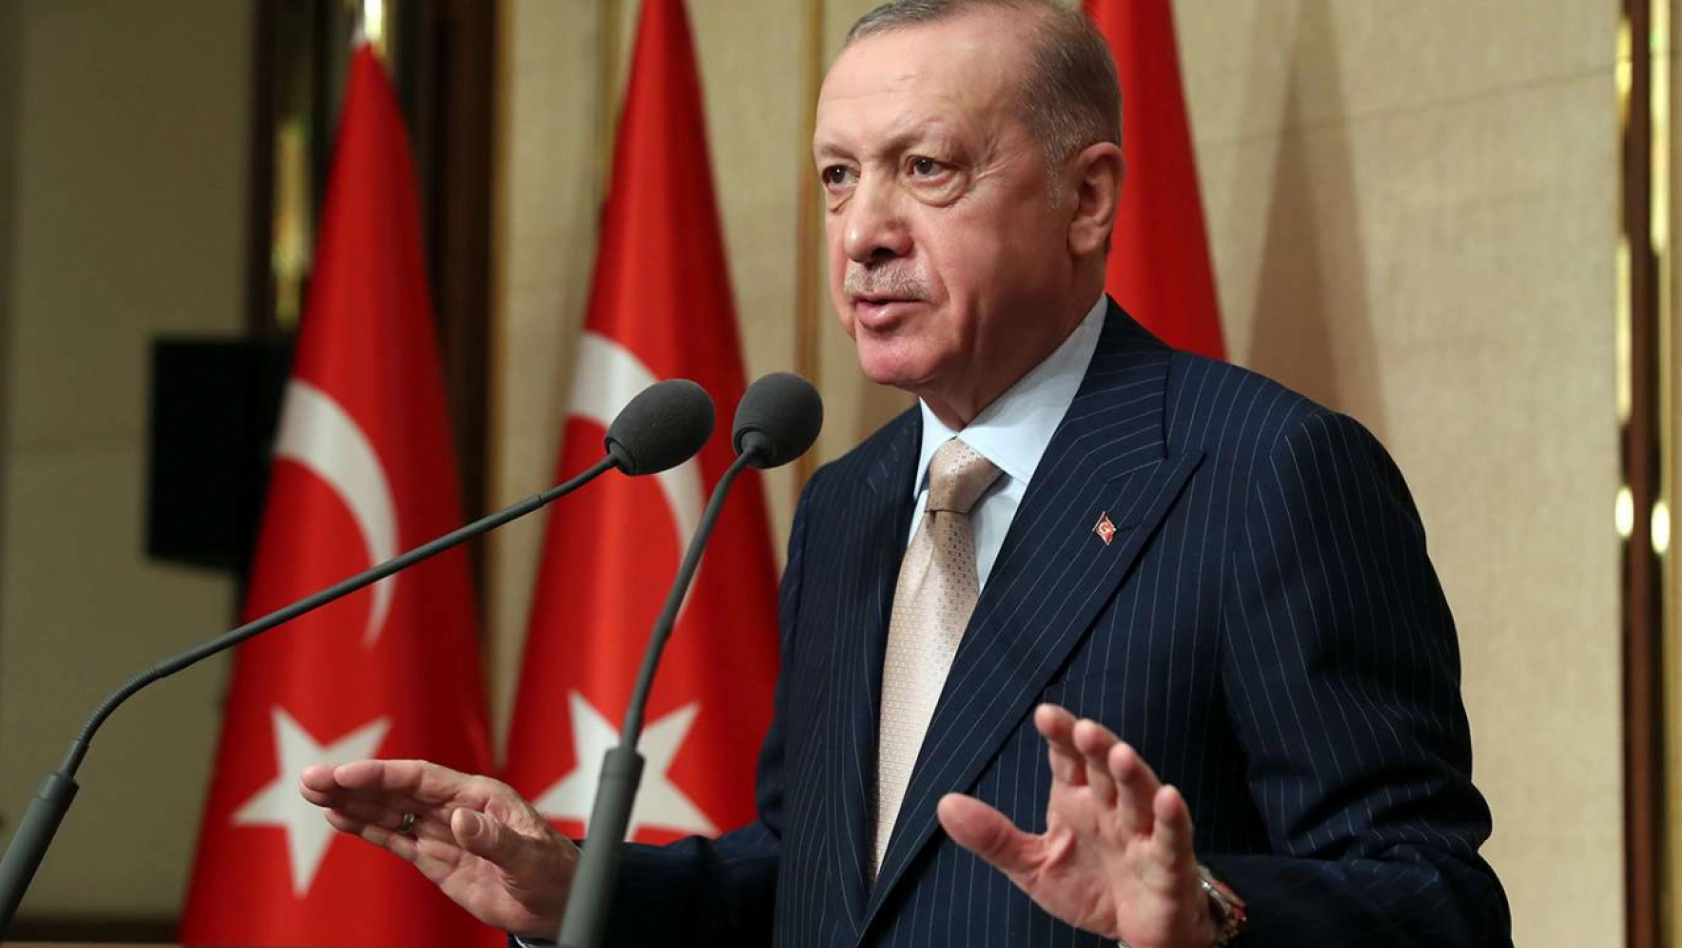 Cumhurbaşkanı Erdoğan'dan asgari ücret açıklaması